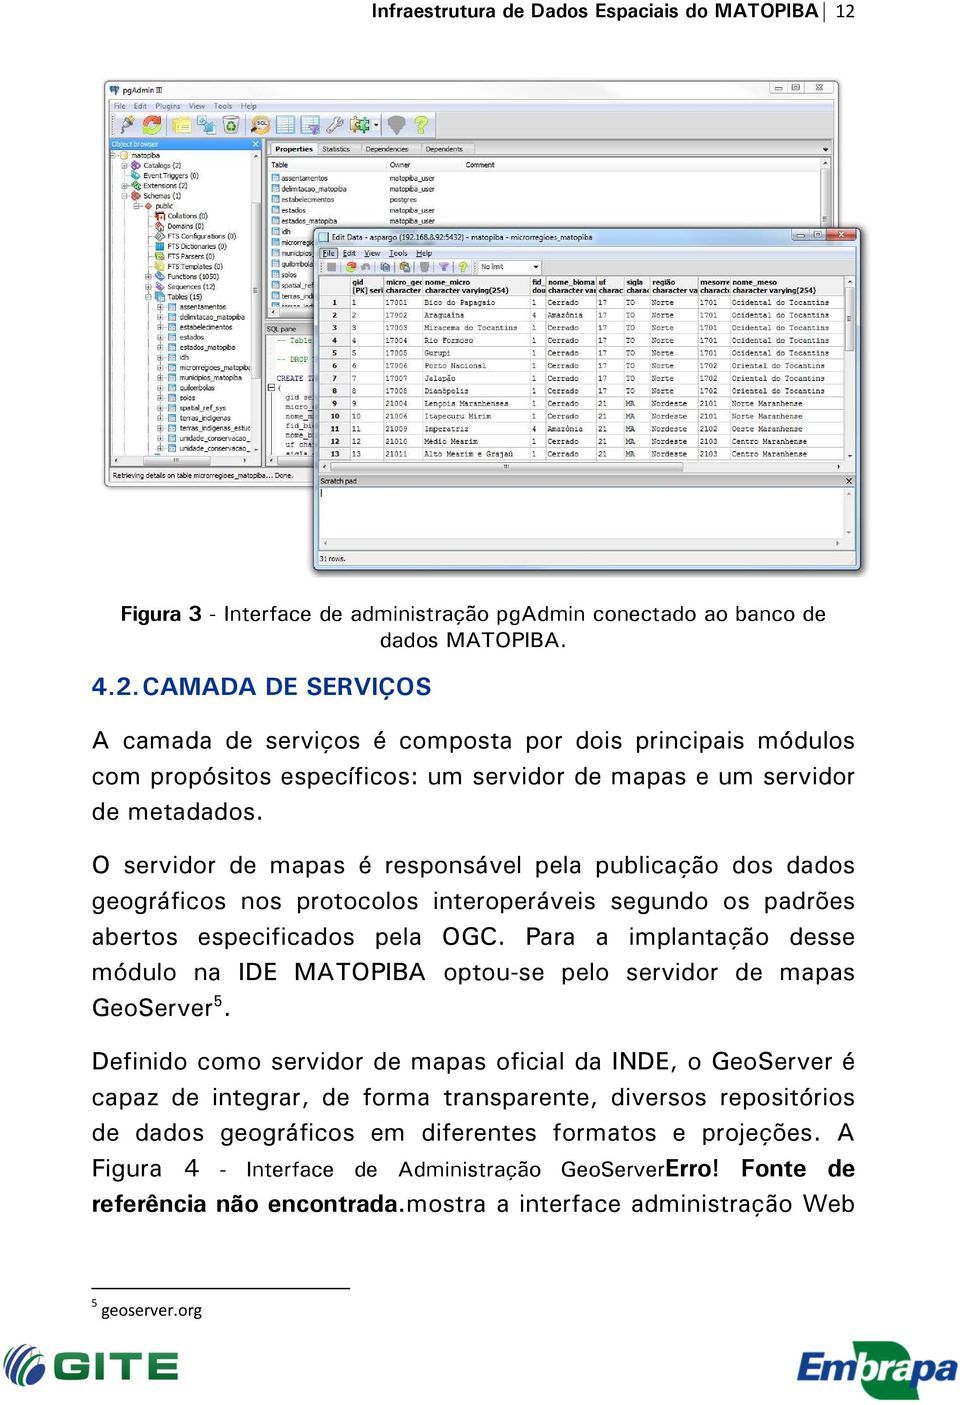 CAMADA DE SERVIÇOS A camada de serviços é composta por dois principais módulos com propósitos específicos: um servidor de mapas e um servidor de metadados.